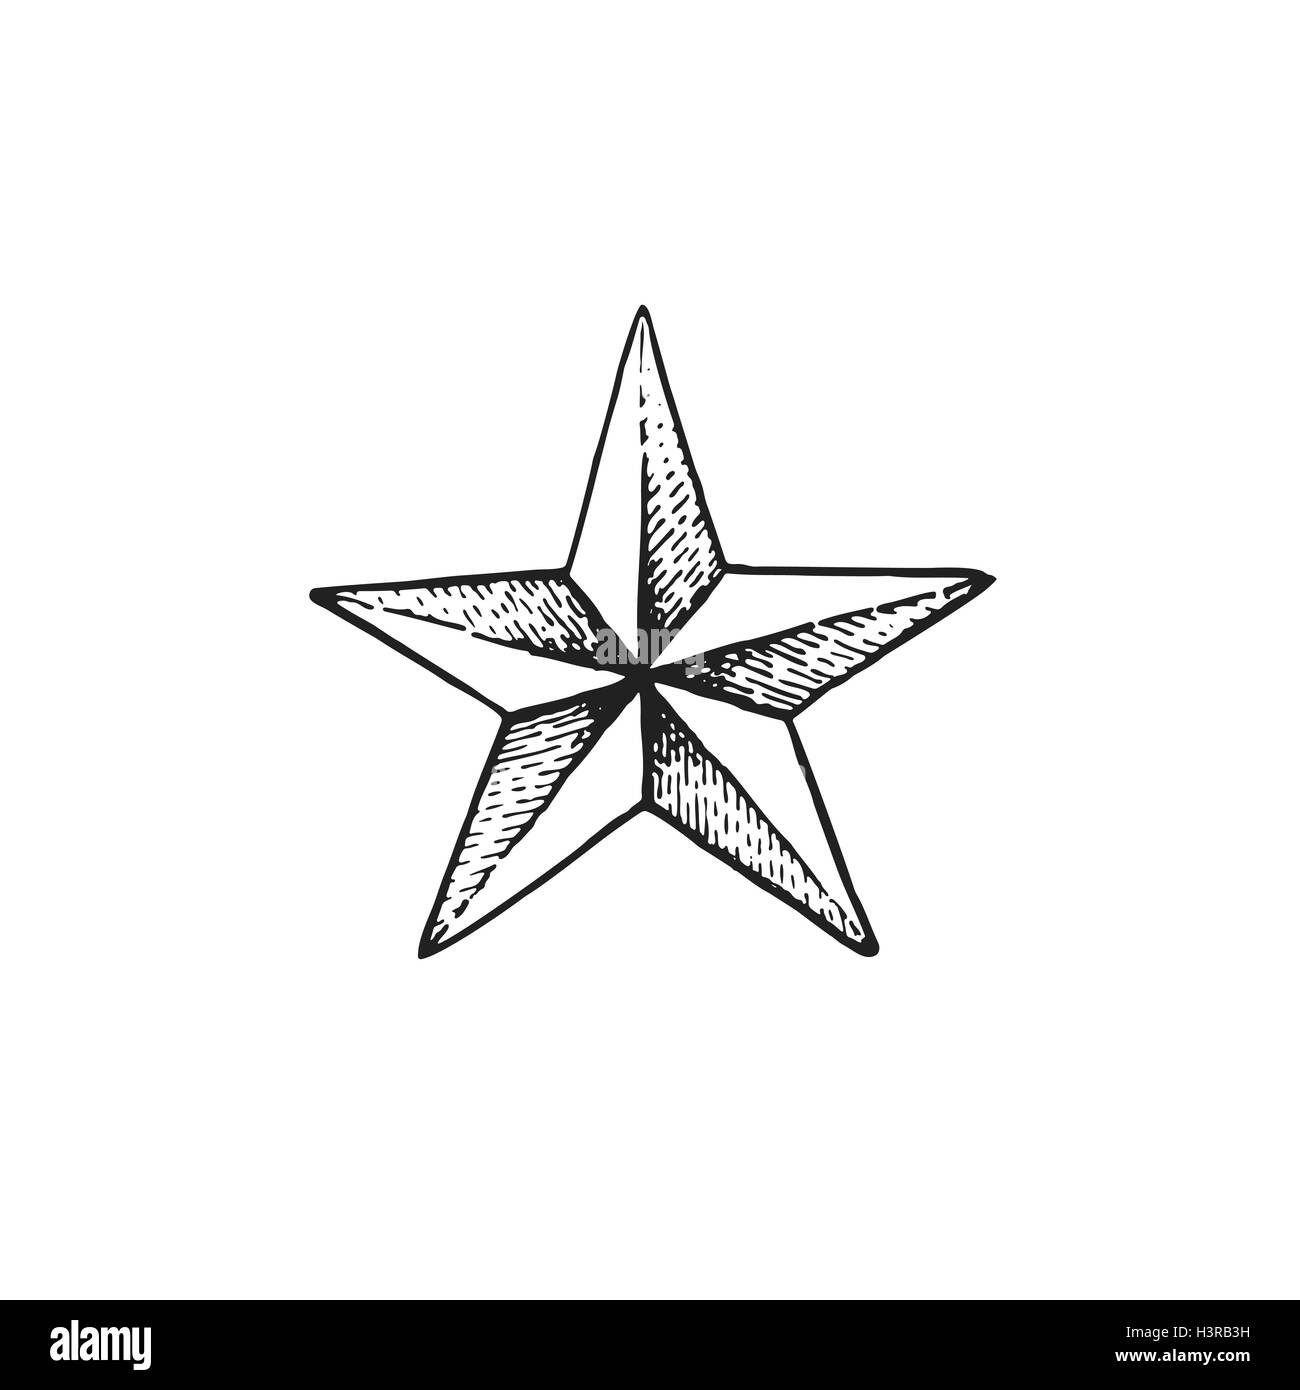 Vector black tattoo art travail dot dessinés à la main, gravure star shape illustration isolé sur fond blanc Illustration de Vecteur